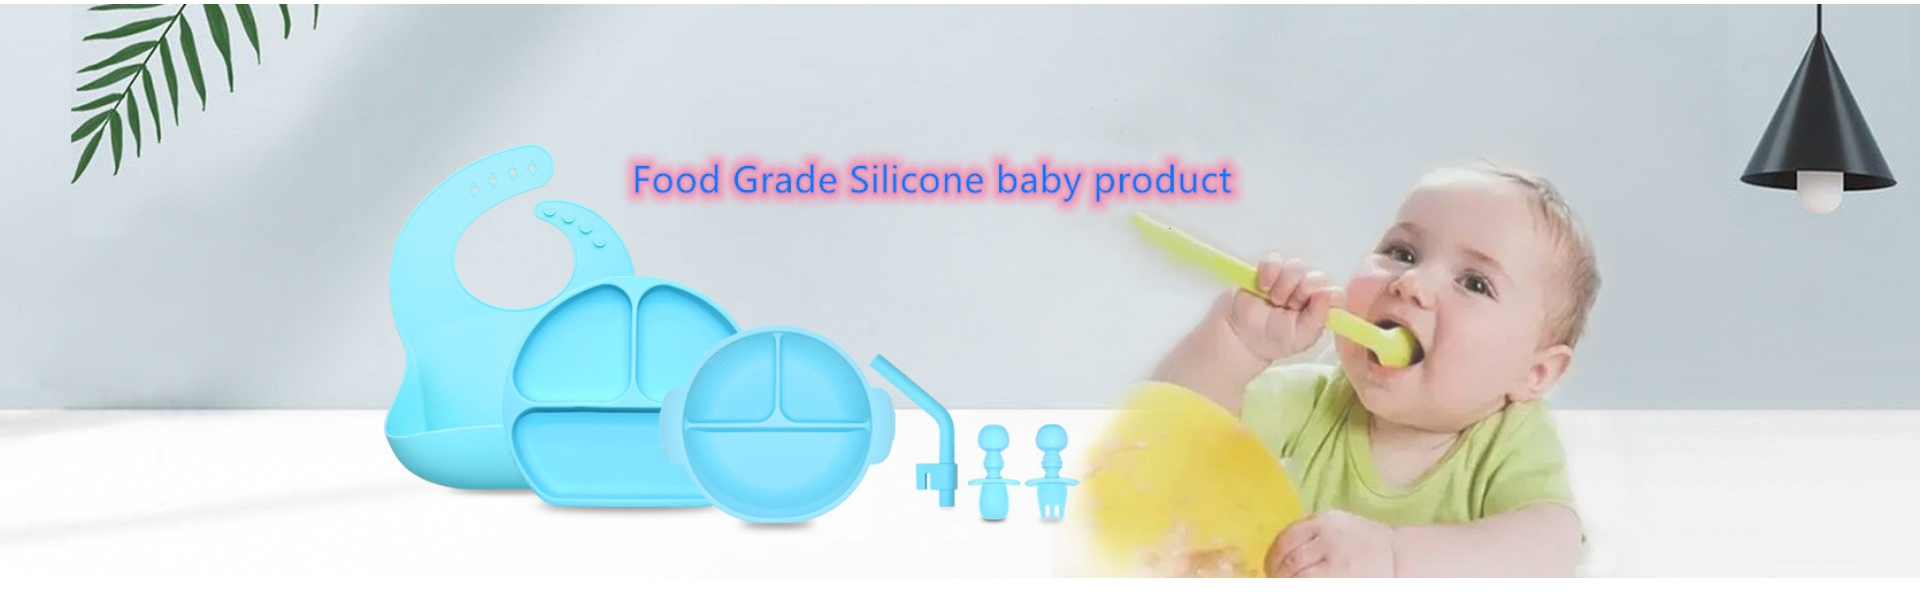 Ustensiles de cuisine en silicone, moules à glace en silicone, produits pour bébés en silicone,Huizhou Calipolo accessory Ltd